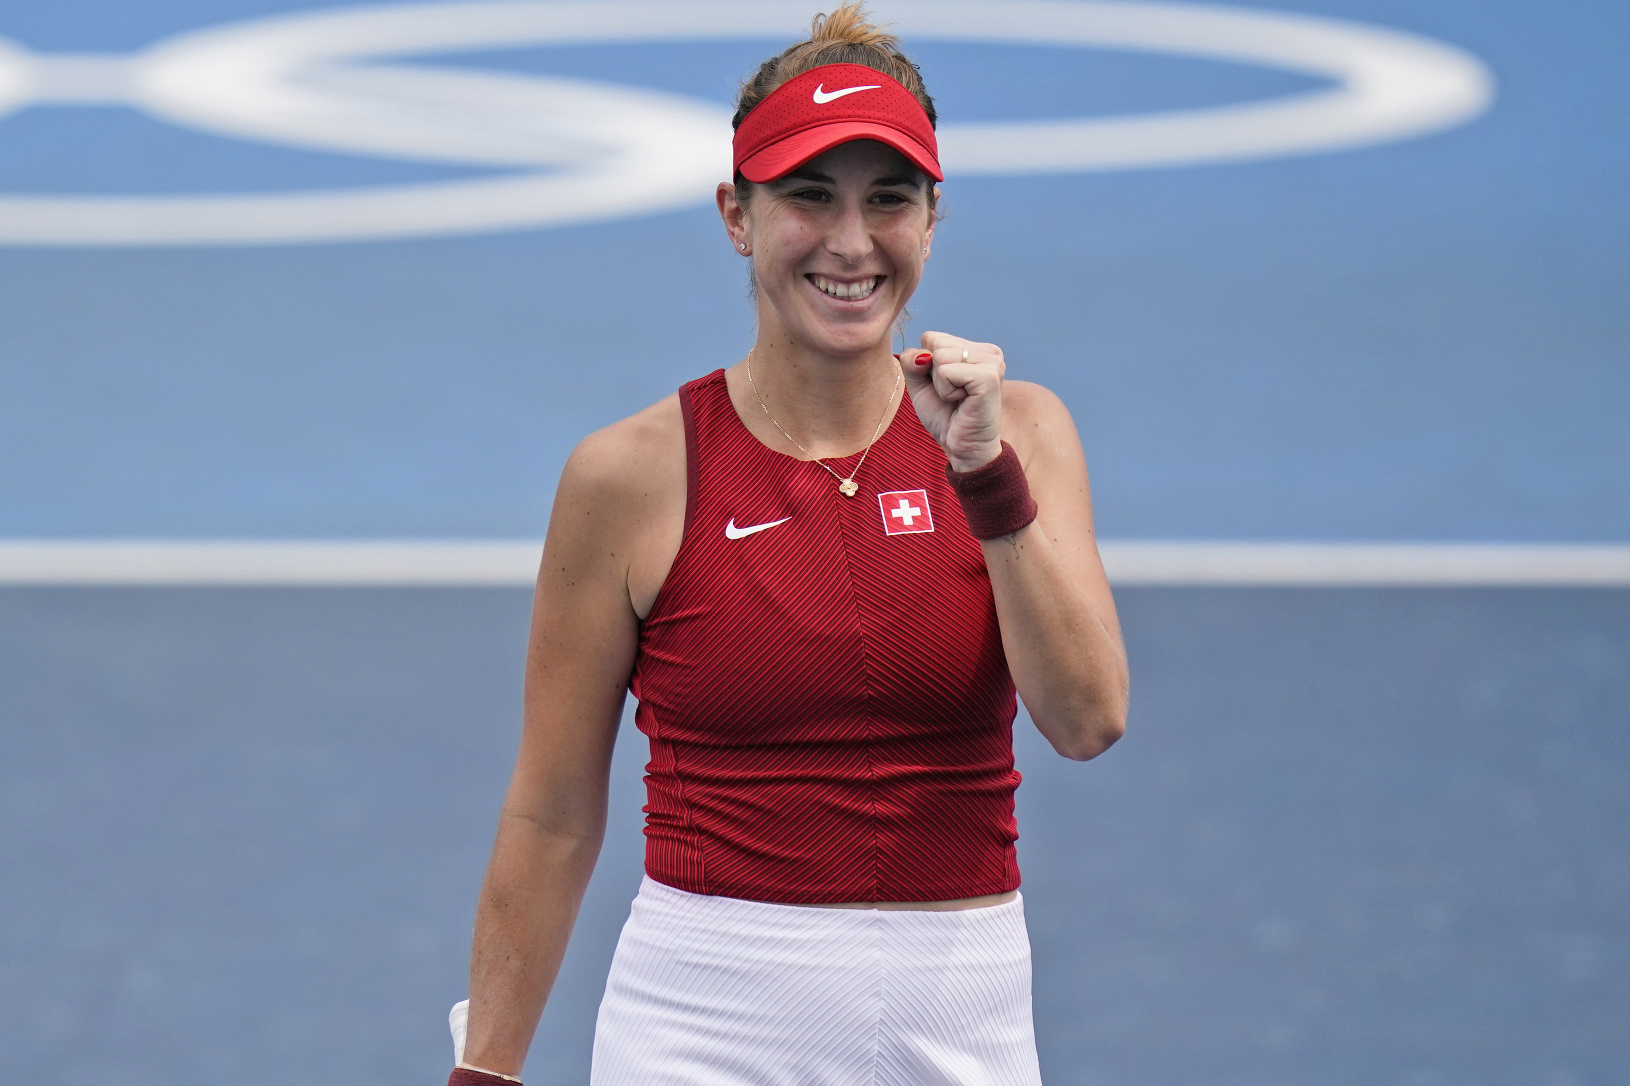 Švajčiarska tenistka Belinda Benčičová